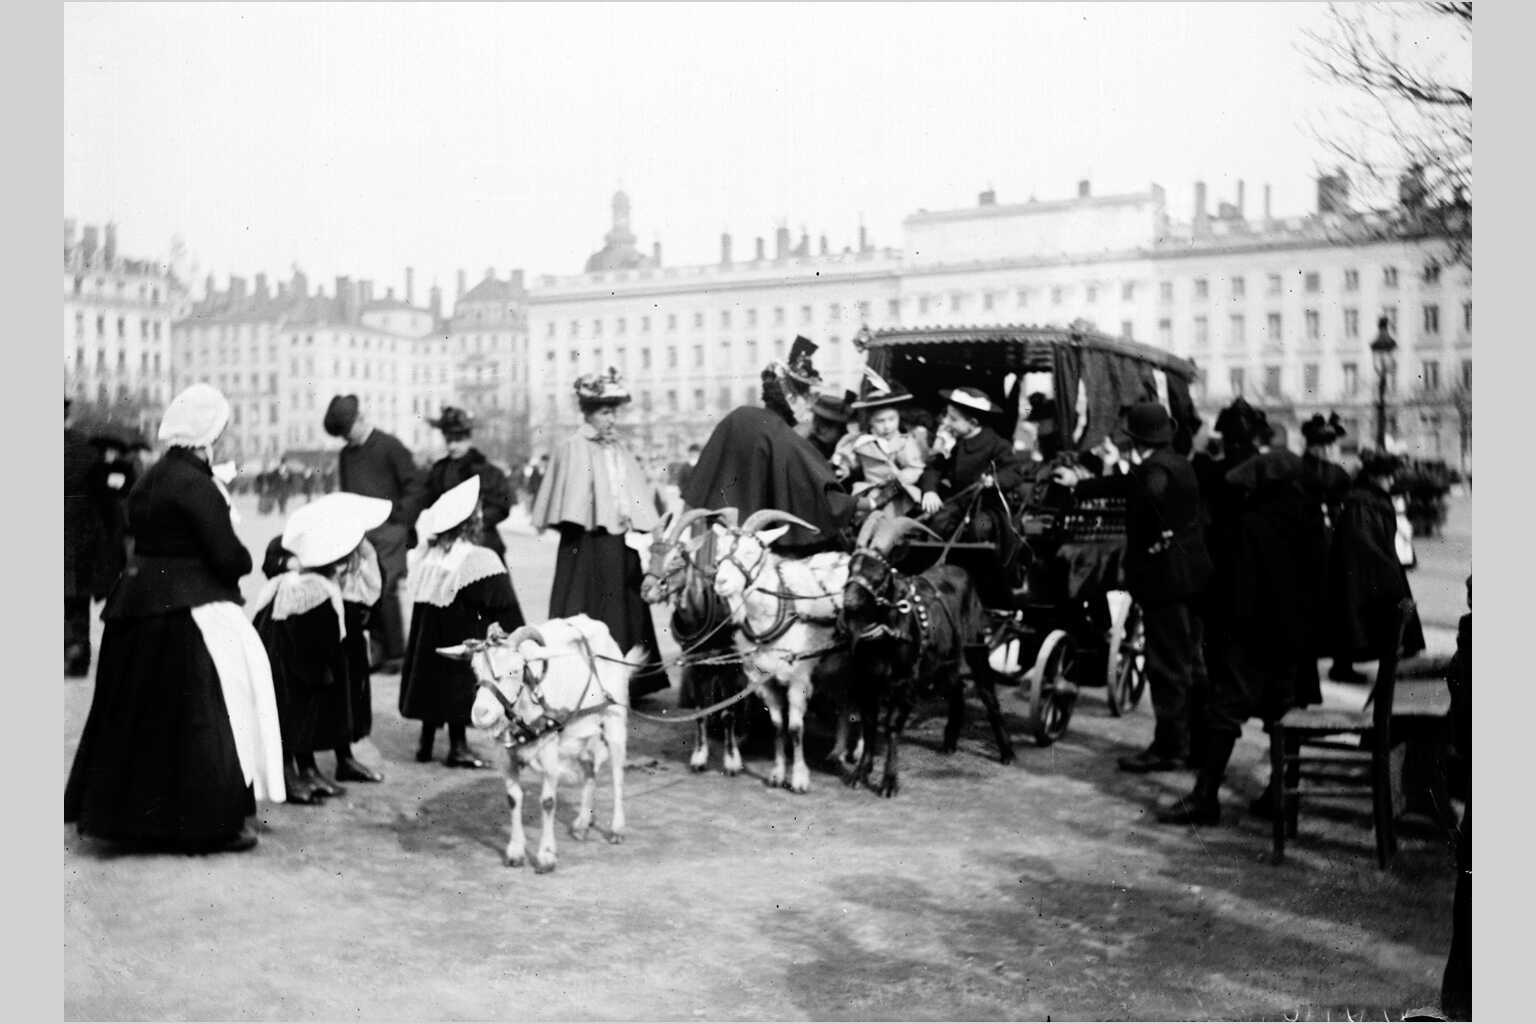 Voiture aux chèvres de la place Bellecour : photographie négative NB sur plaque de verre avec inscription "M. Molard" (vers 1900, cote : 10PH/156)